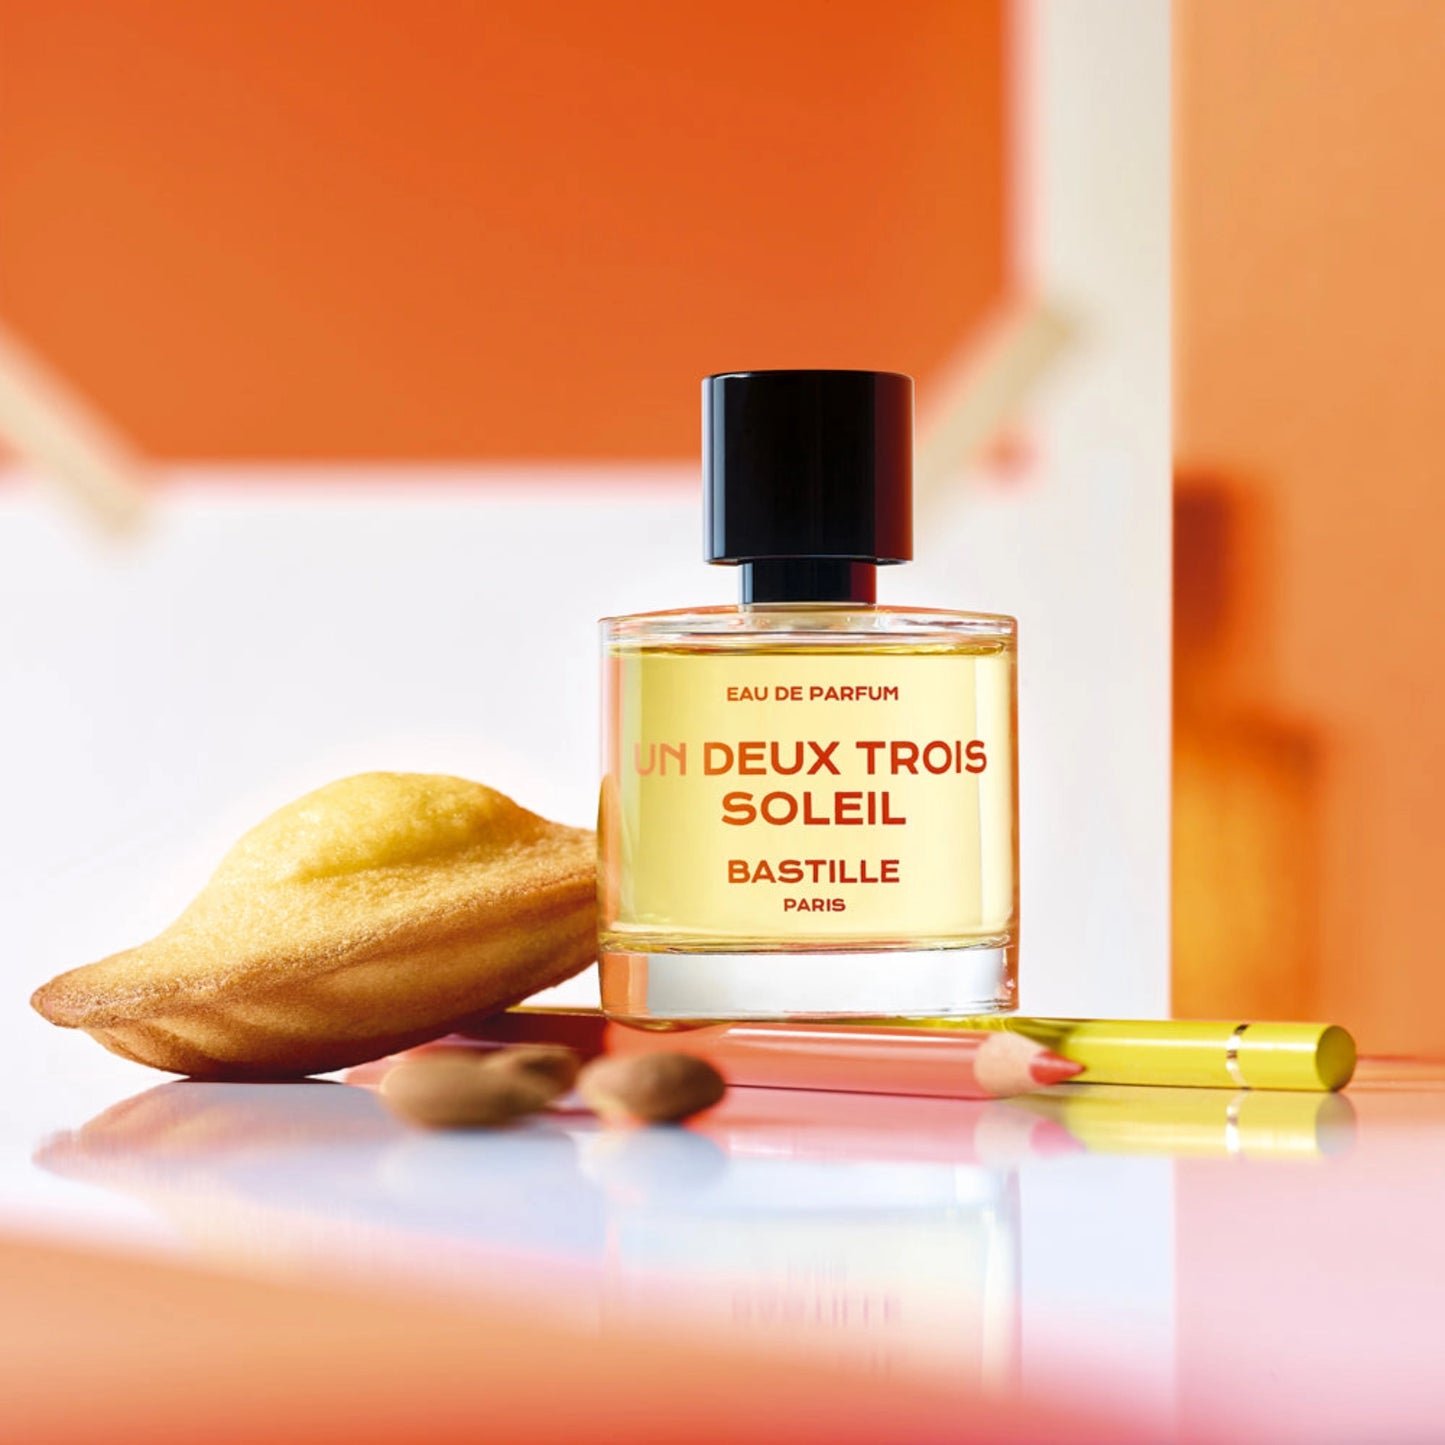 Un Deux trois Soleil Eau De Parfum fra Bastille Paris på orange baggrund